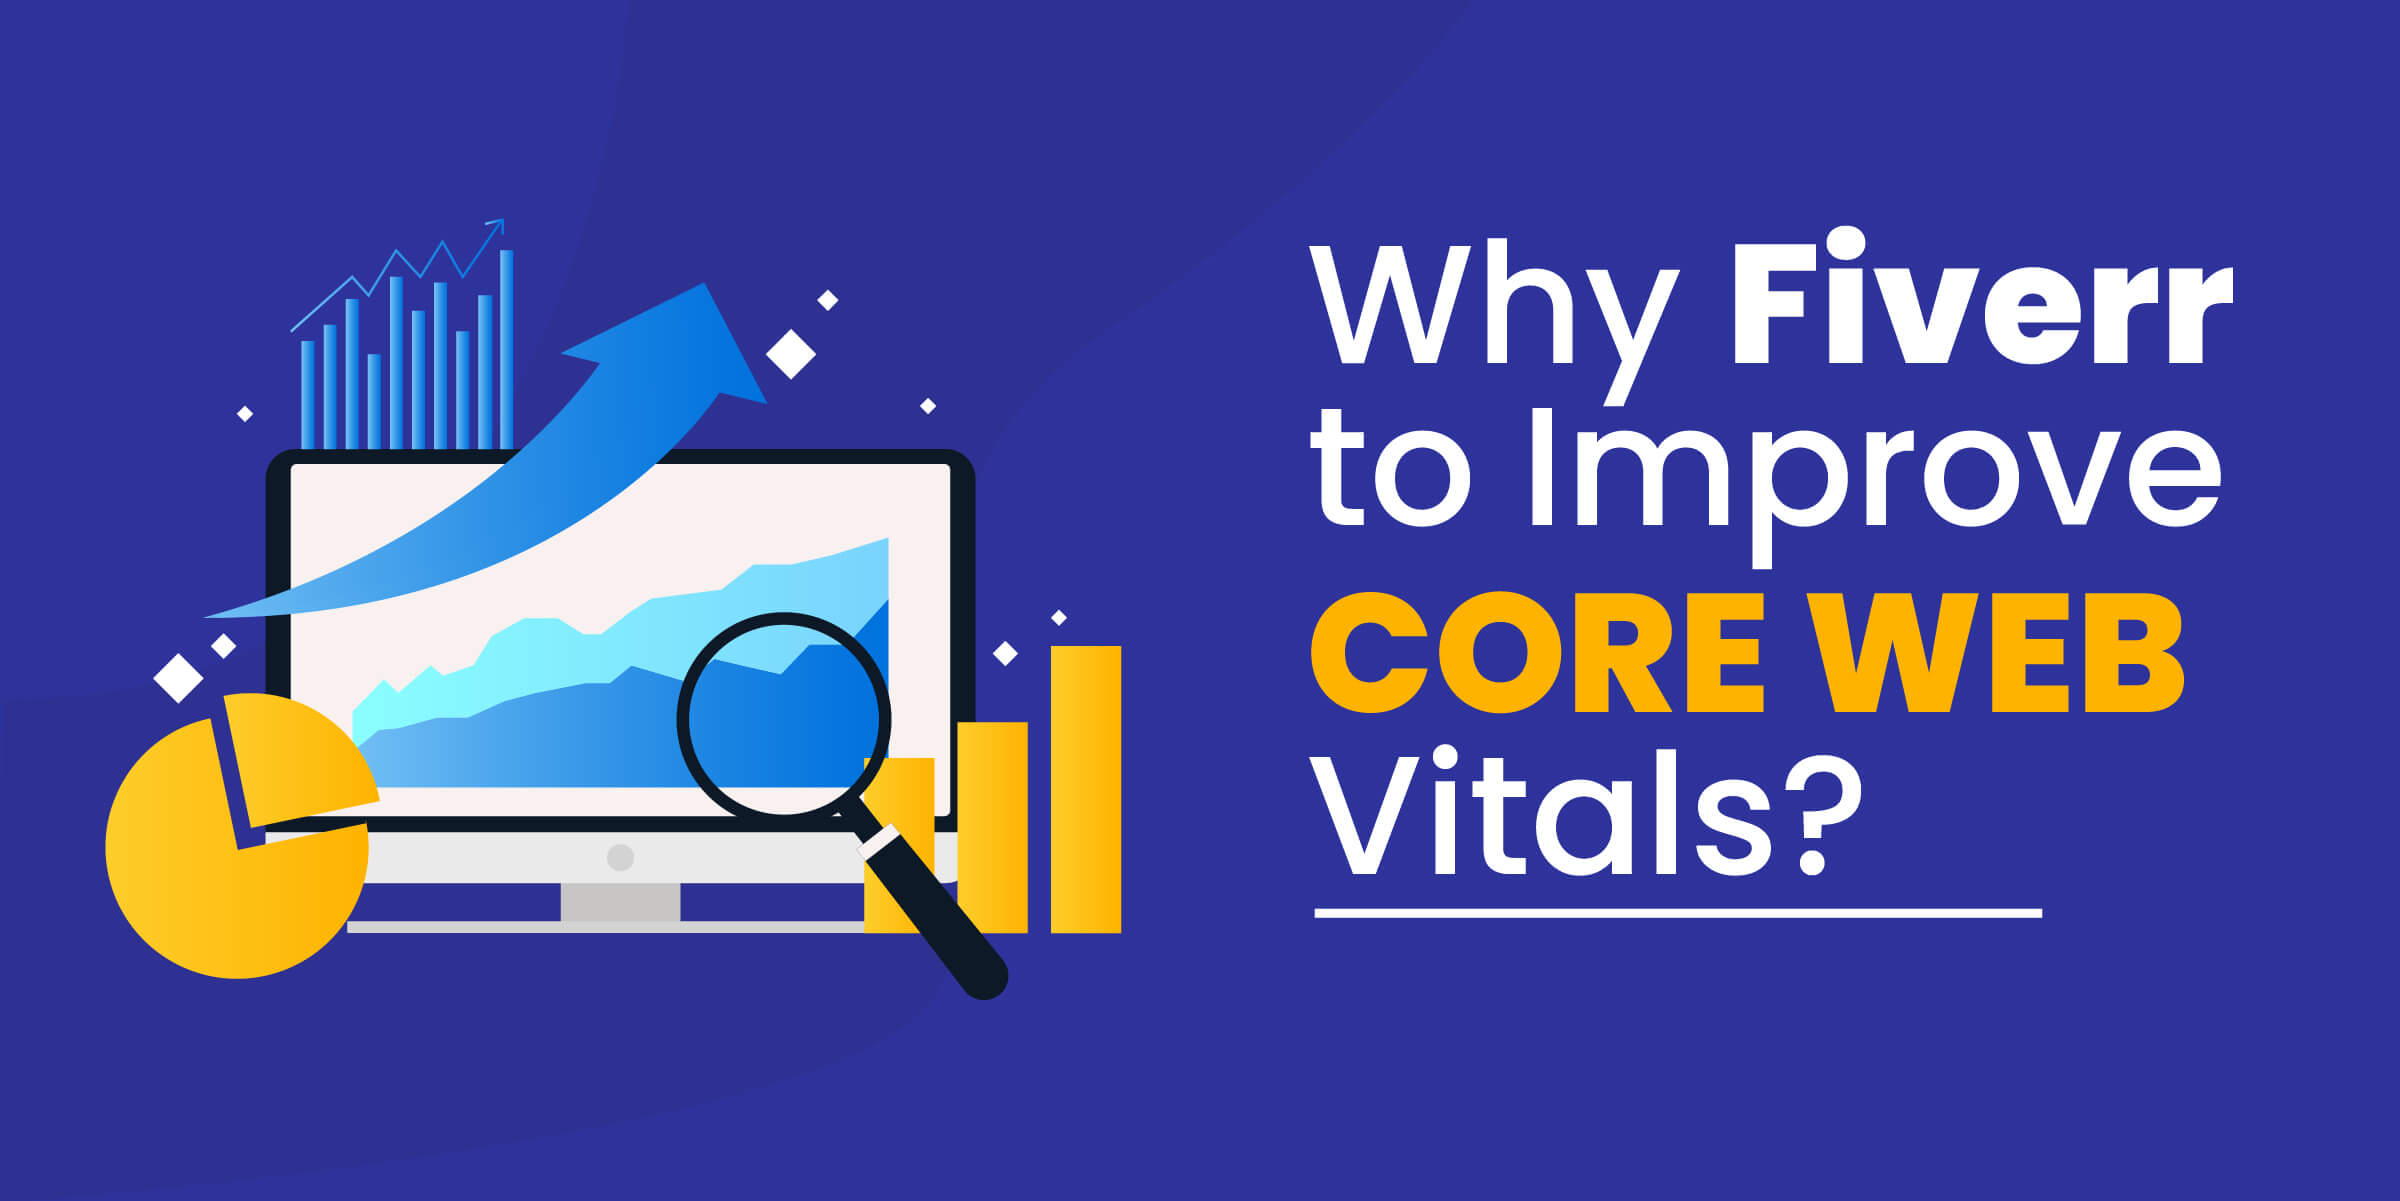 Why Fiverr for Core Web Vitals